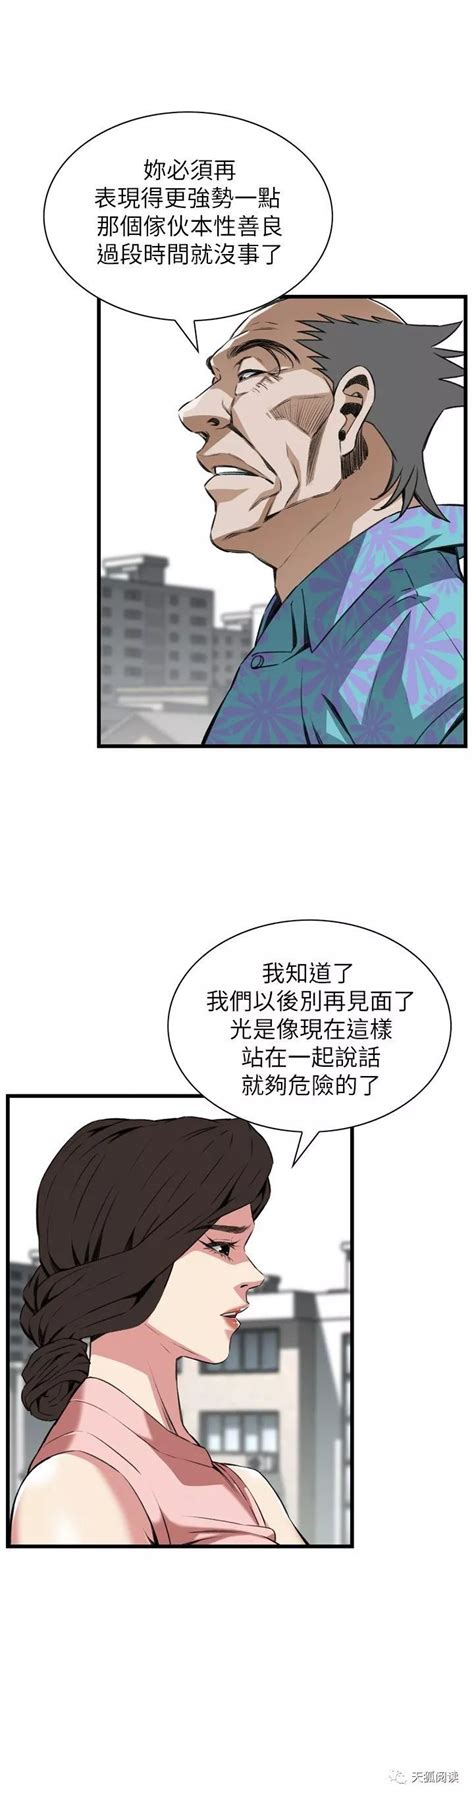 窥视者2 - 僵尸王恐怖漫画/恐怖故事 - 第2页